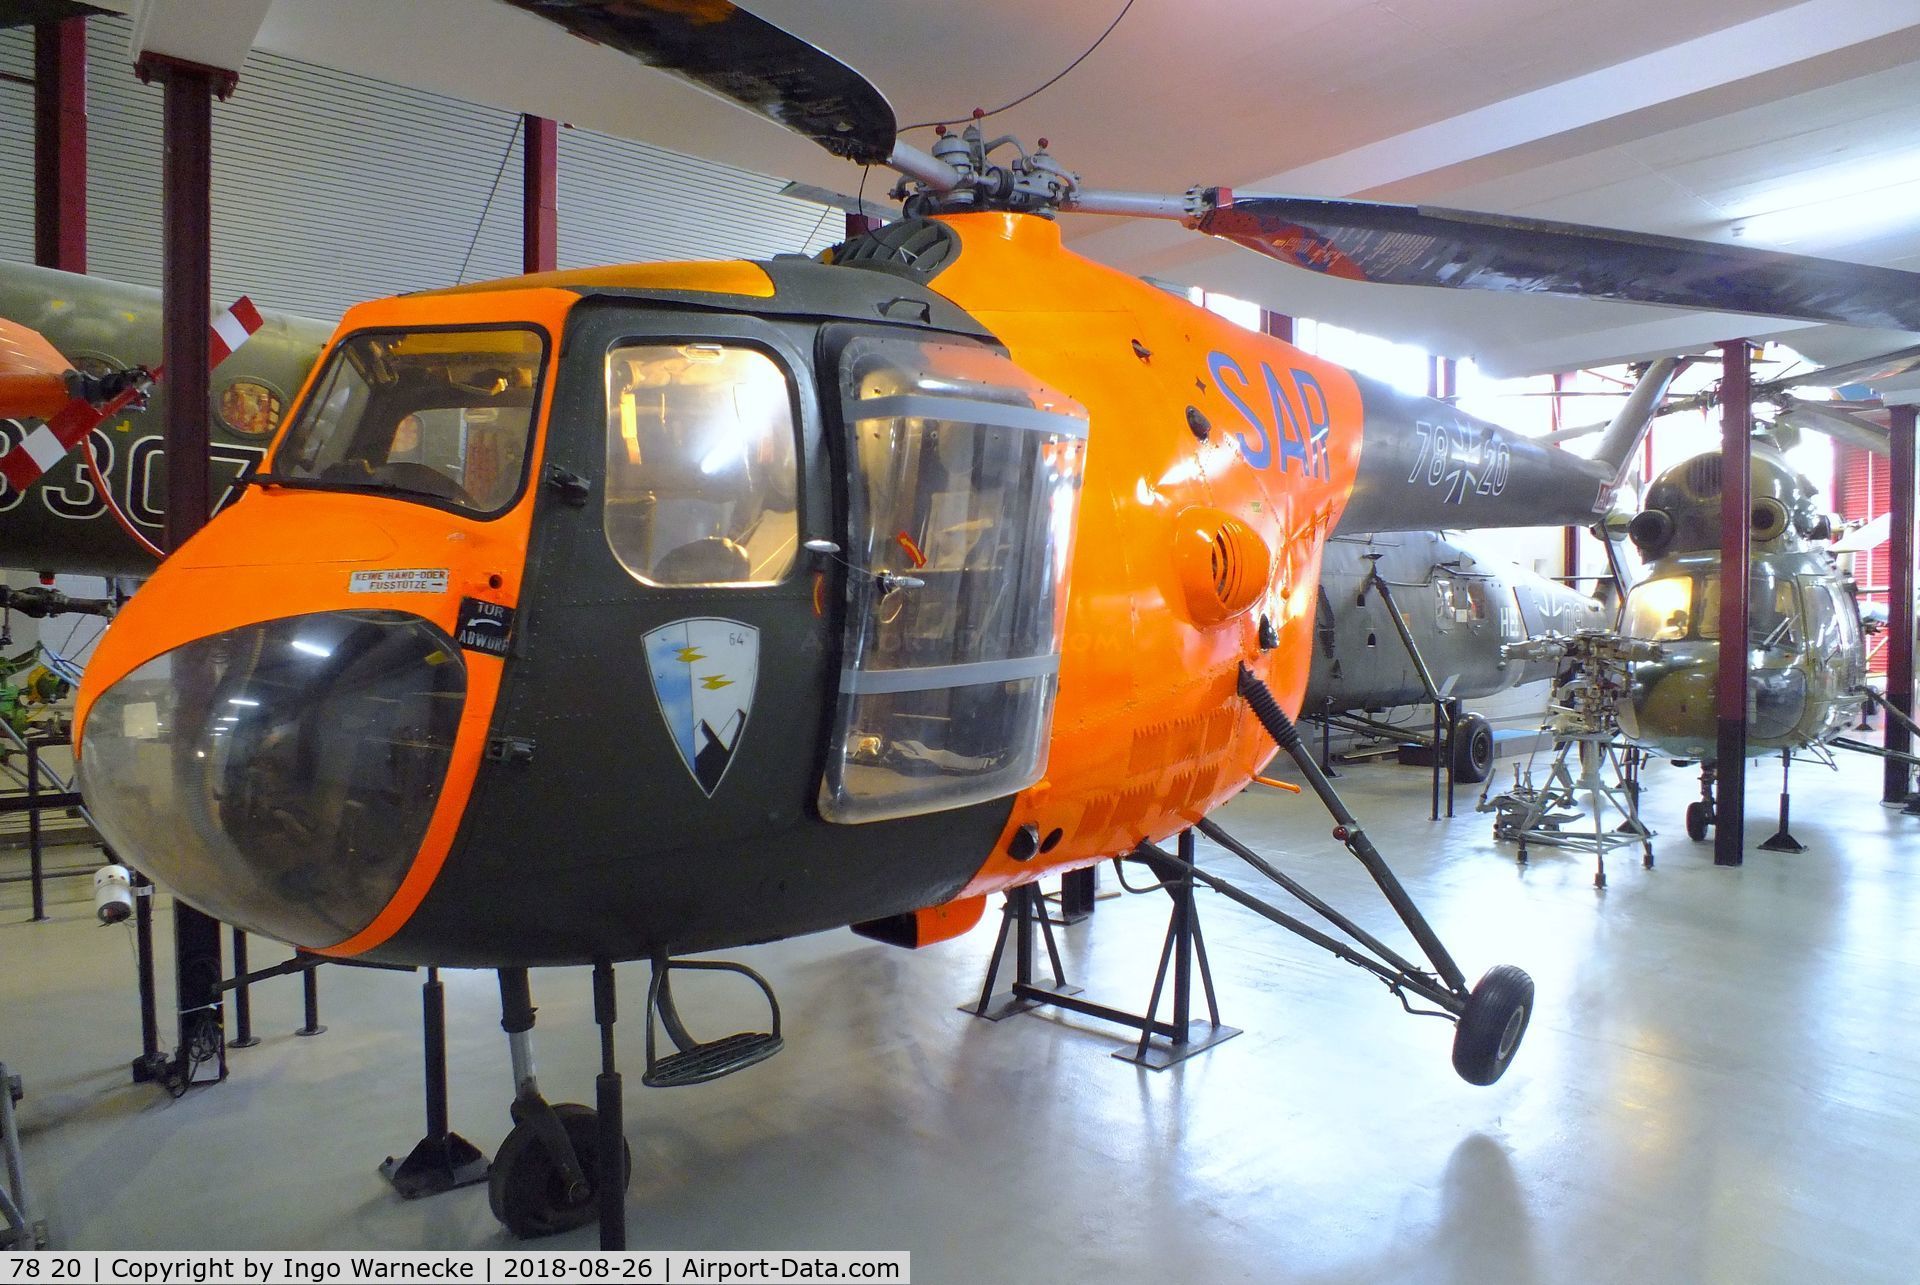 78 20, Bristol 171 Sycamore Mk.52 C/N 13478, Bristol 171 Sycamore Mk52 at the Hubschraubermuseum (helicopter museum), Bückeburg